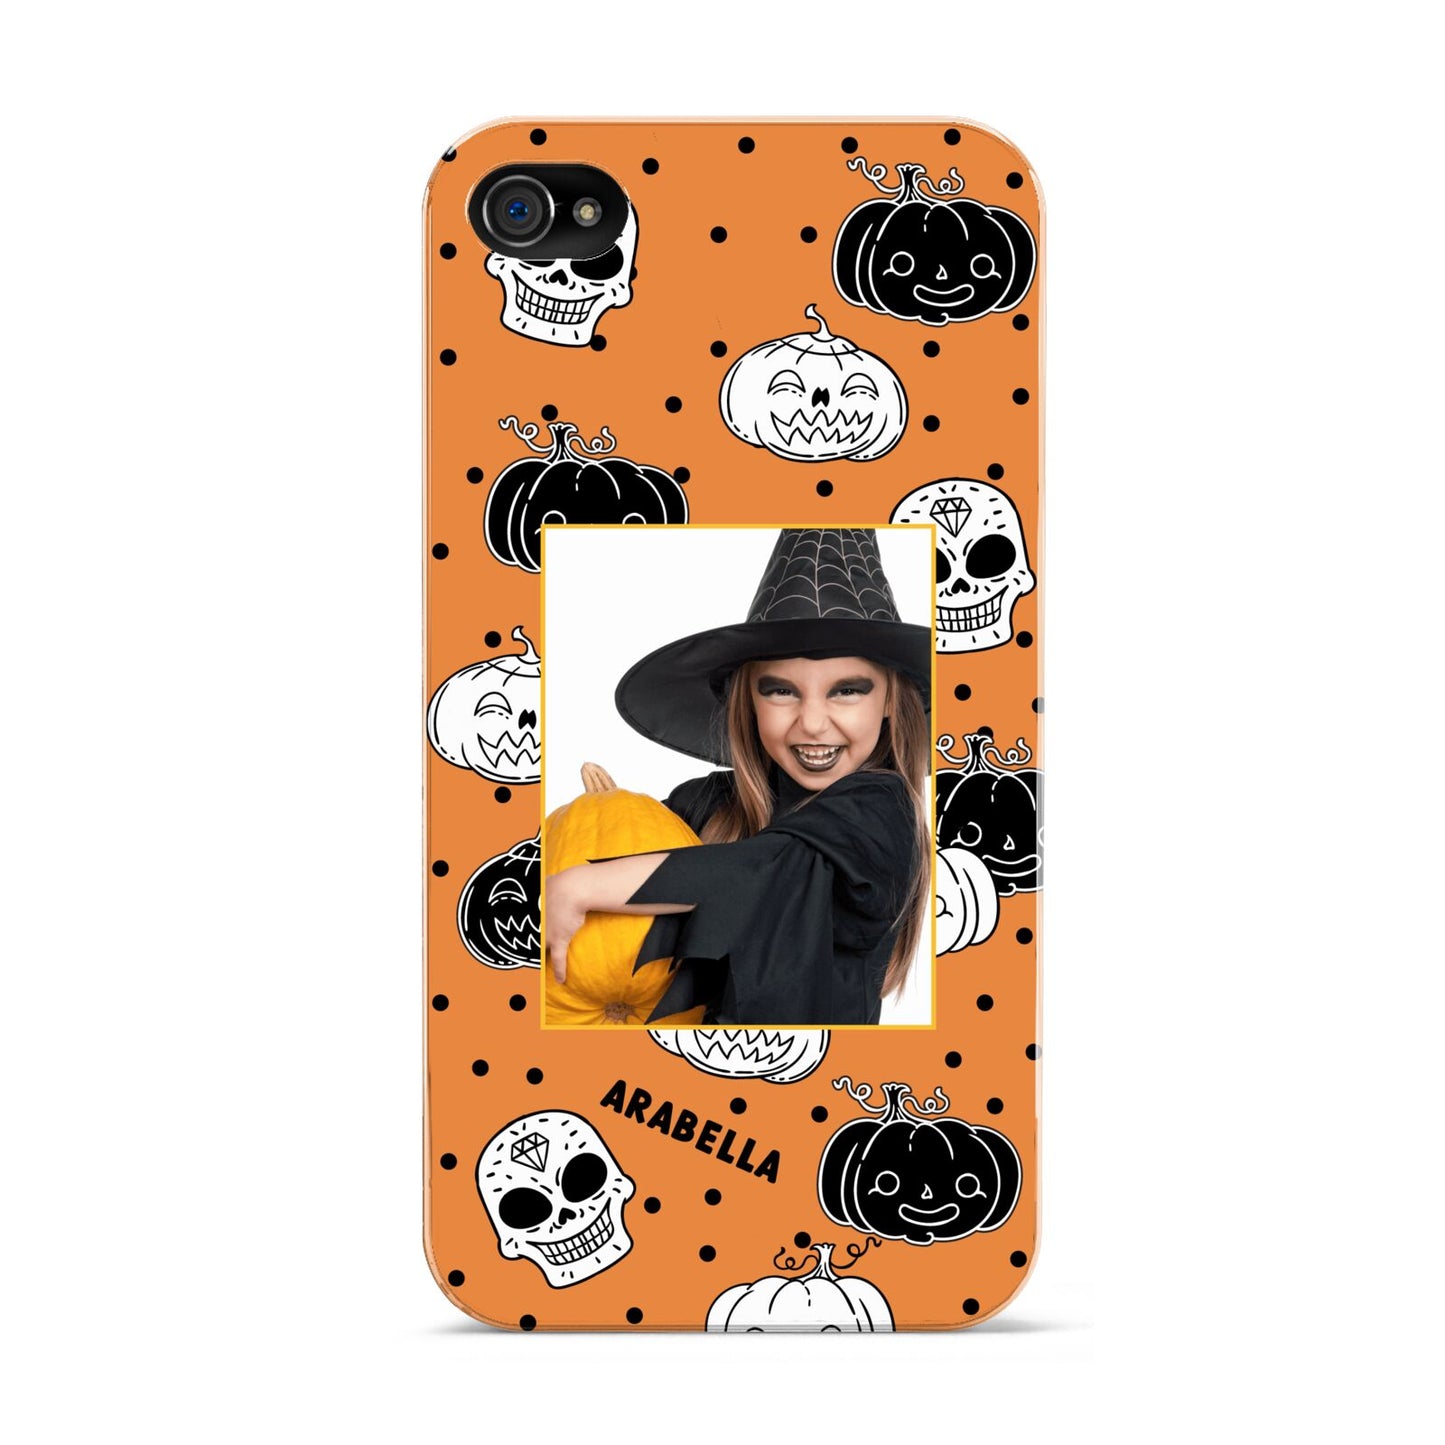 Halloween Pumpkins Photo Upload Apple iPhone 4s Case